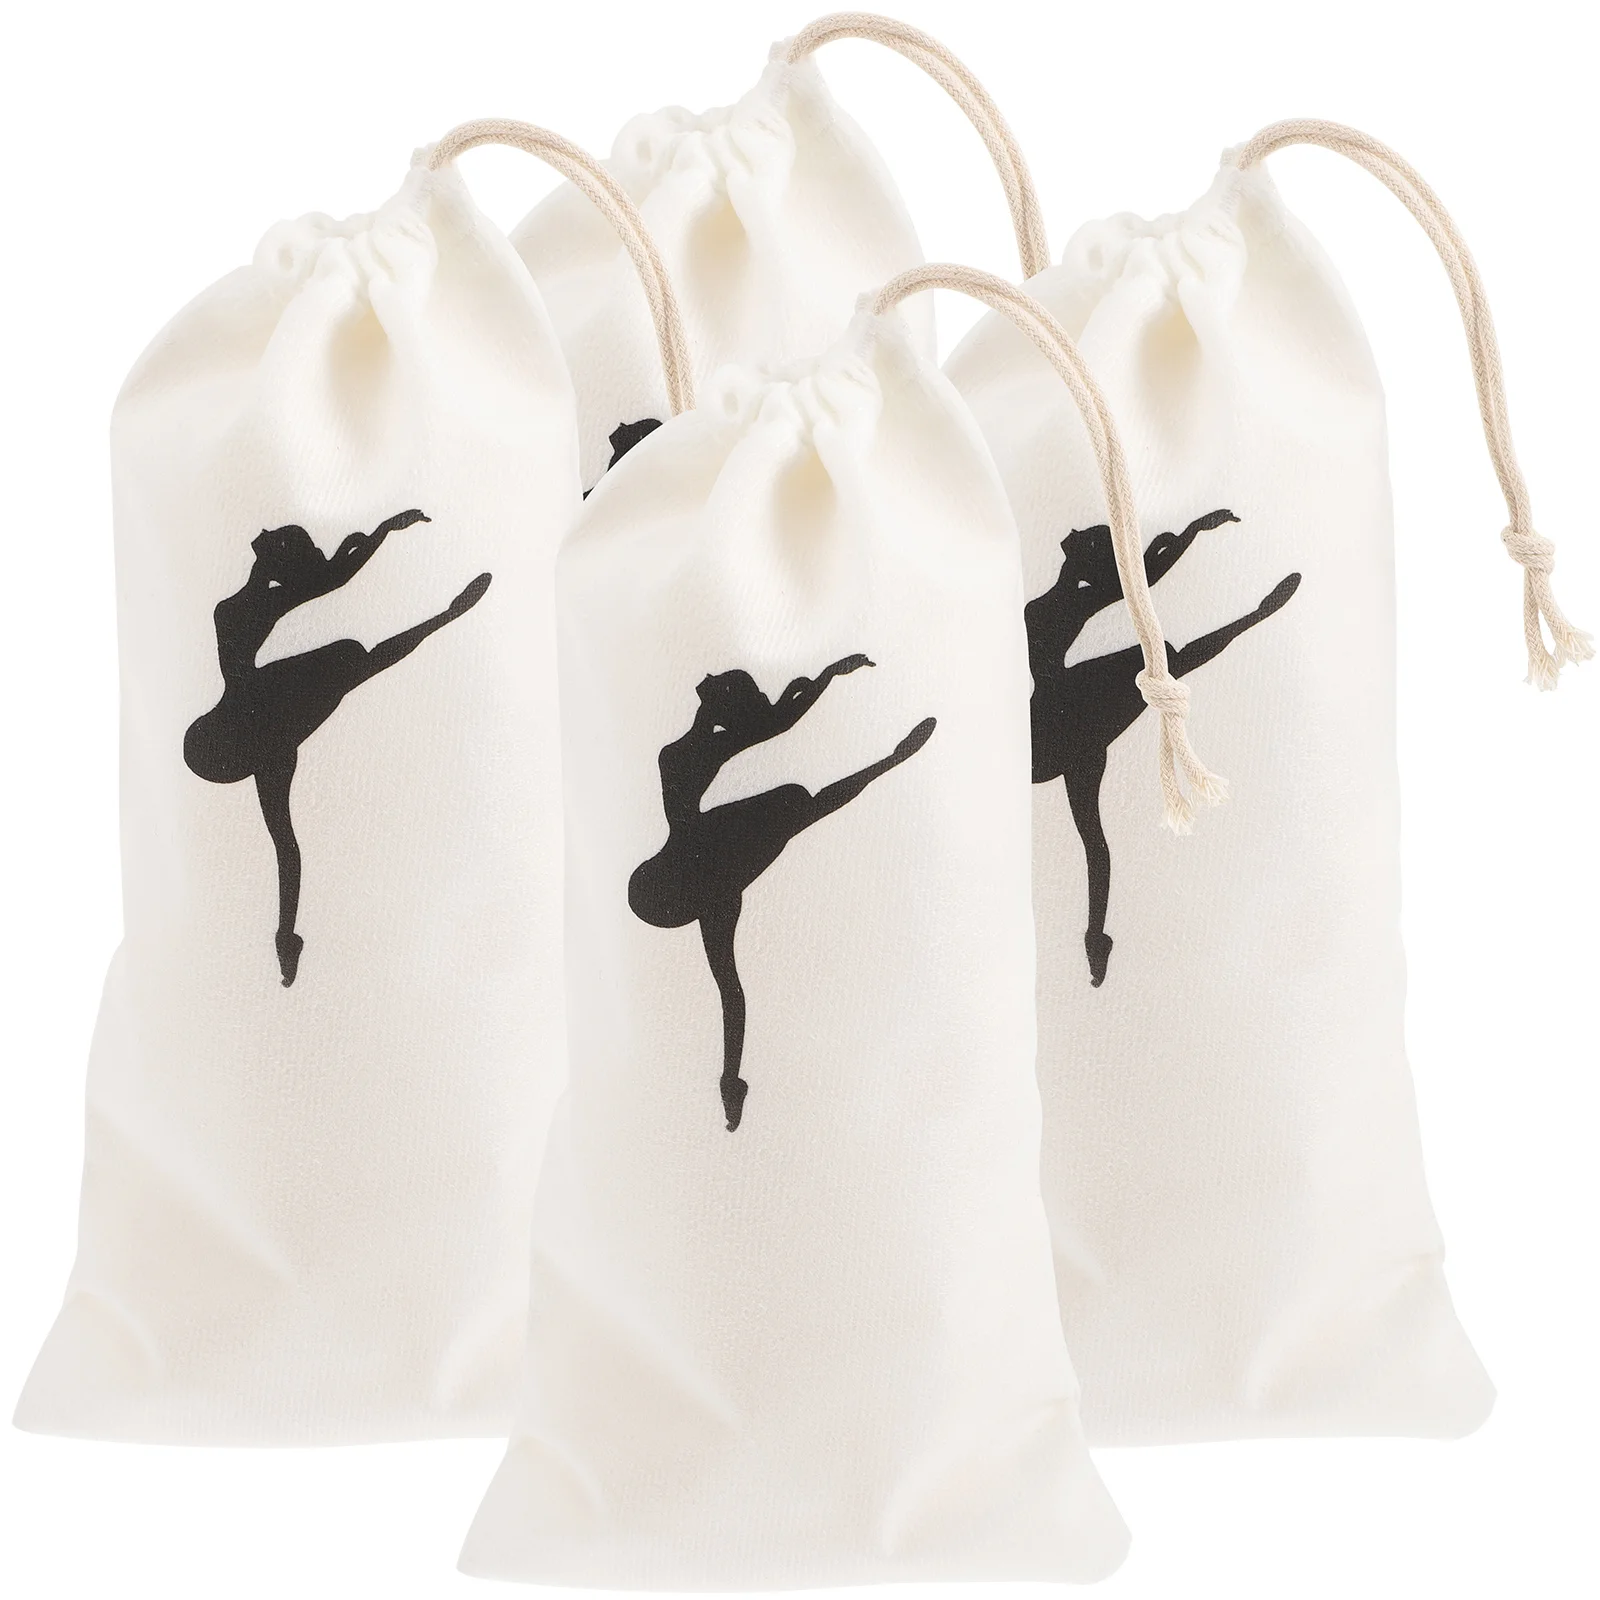 Balett lány táskák Cipő húzózsinór tartó Tárolás Tánc kellékek Vászon szervező Pont Kézitáska betétek - 5